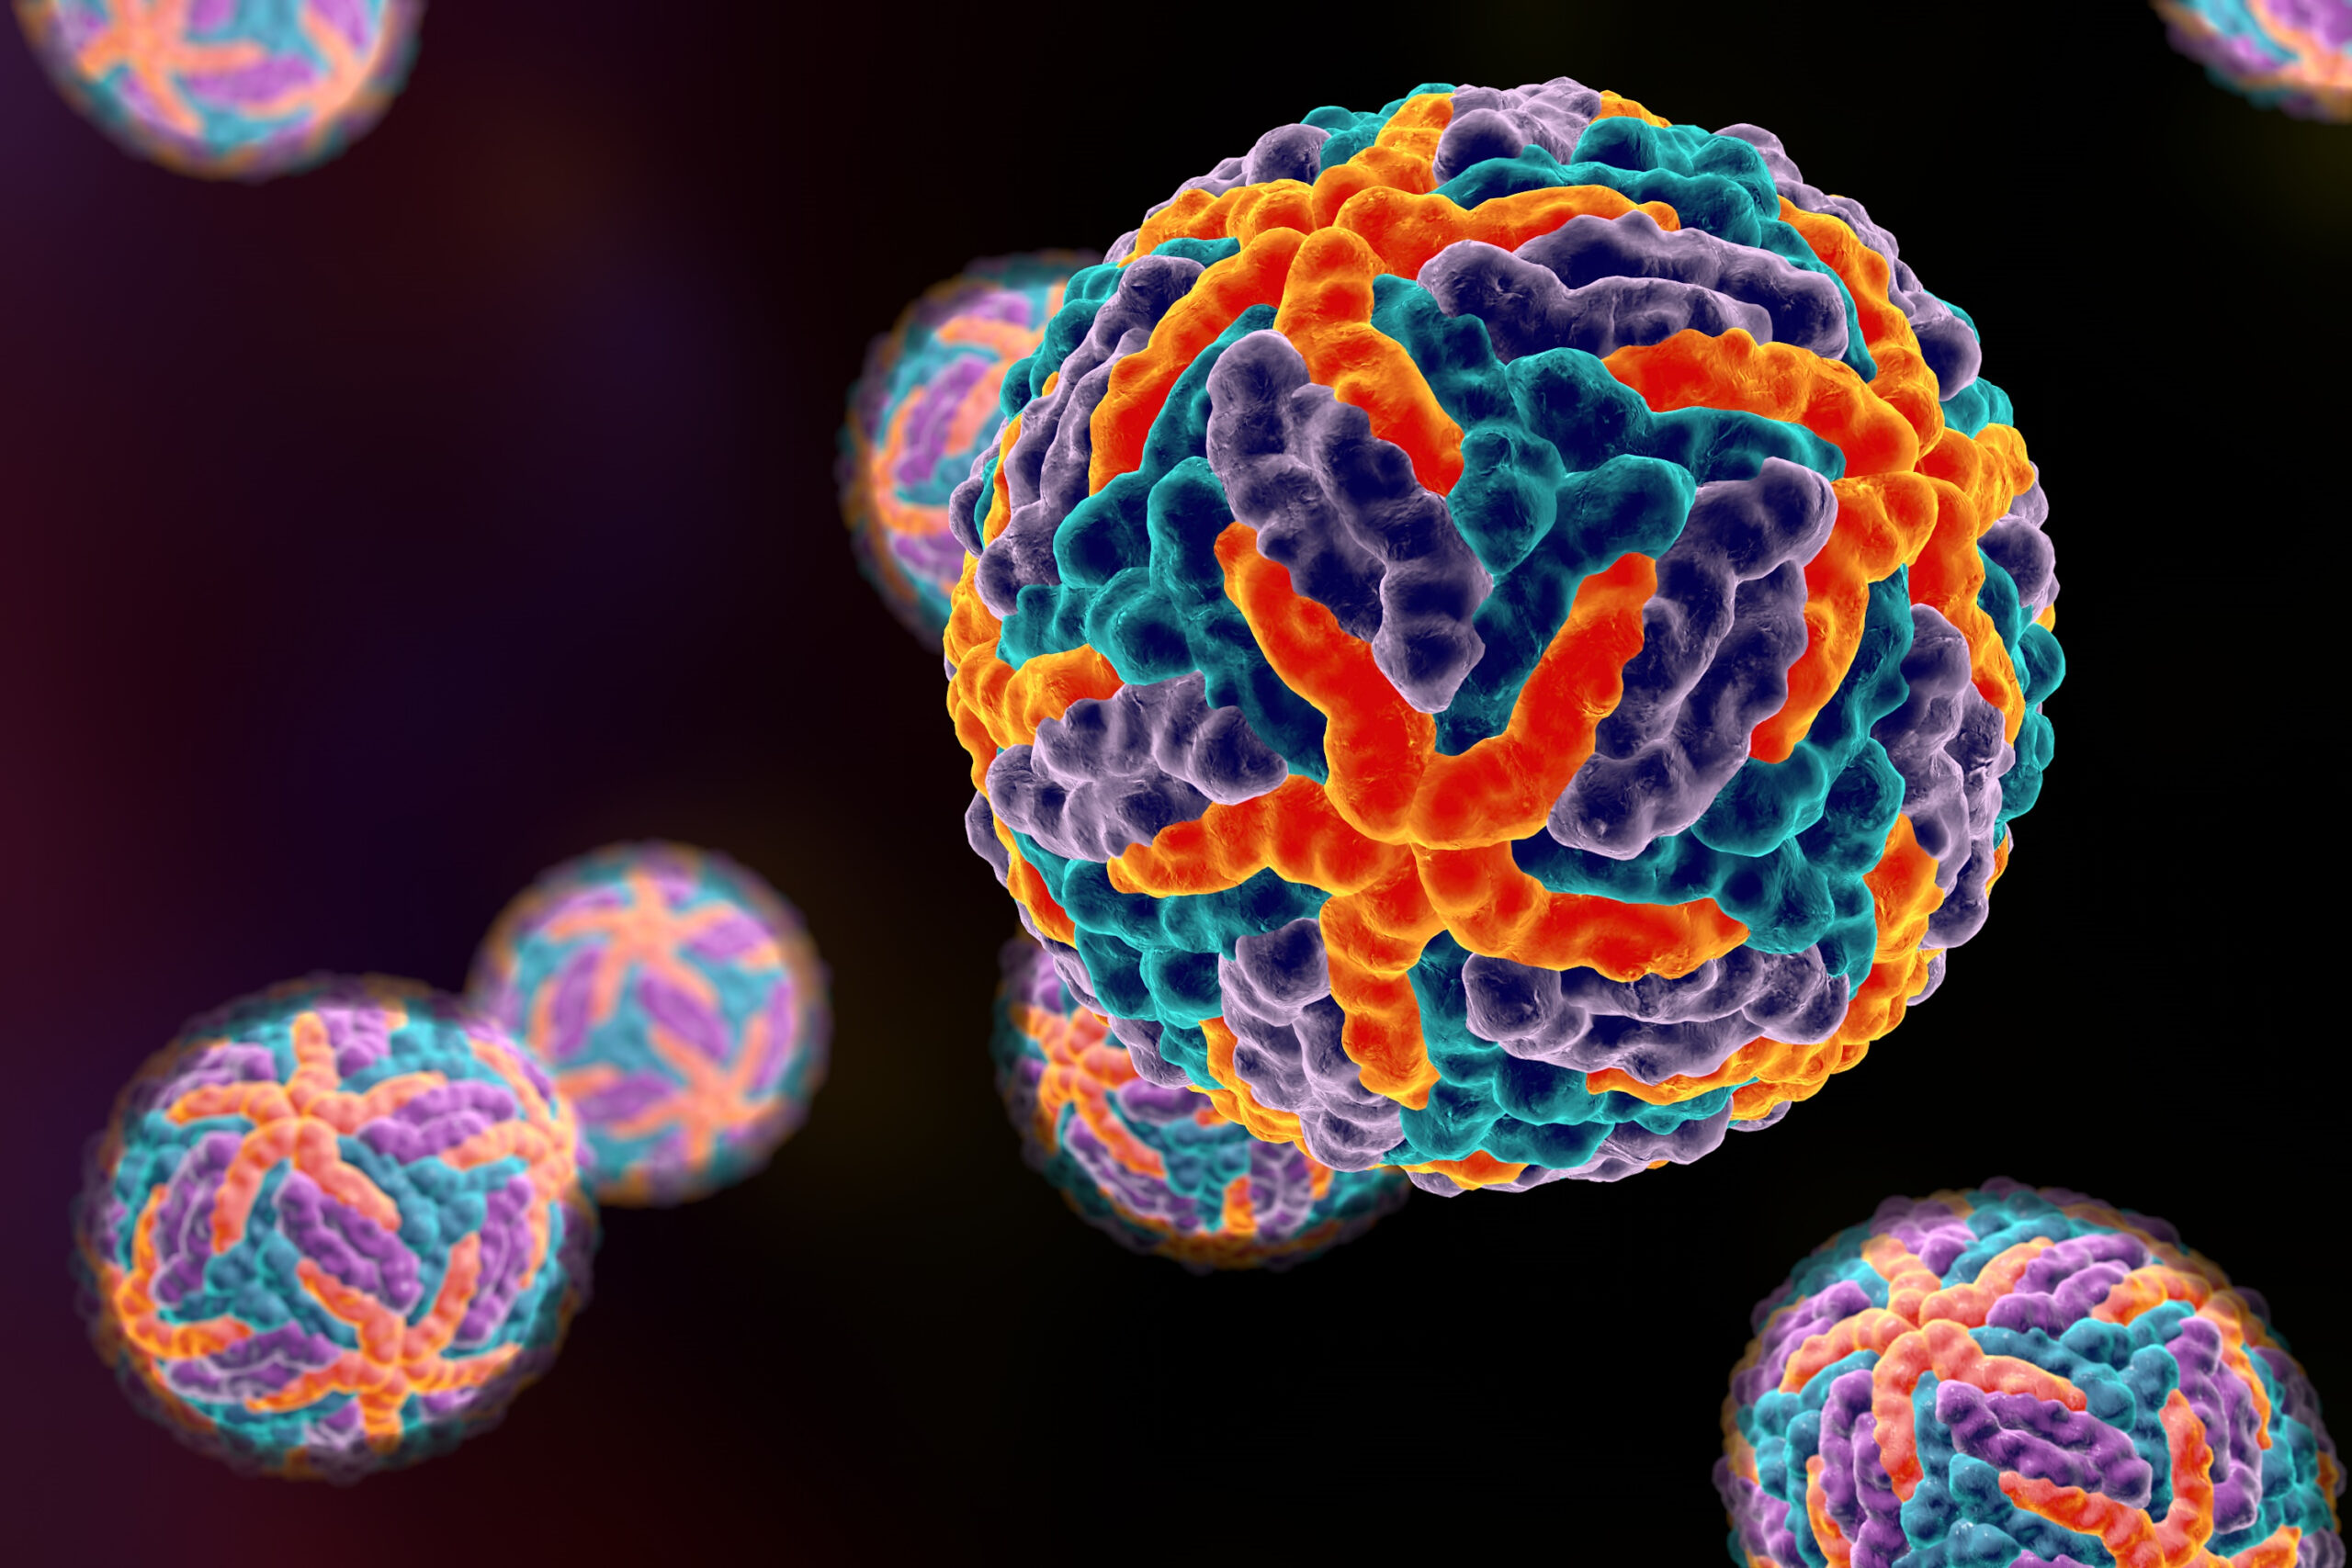 Fig 1. Ilustração 3D representando vírus da dengue. As cores indicam diferentes proteínas do vírus. Crédito: Dr_Microbe/iStock